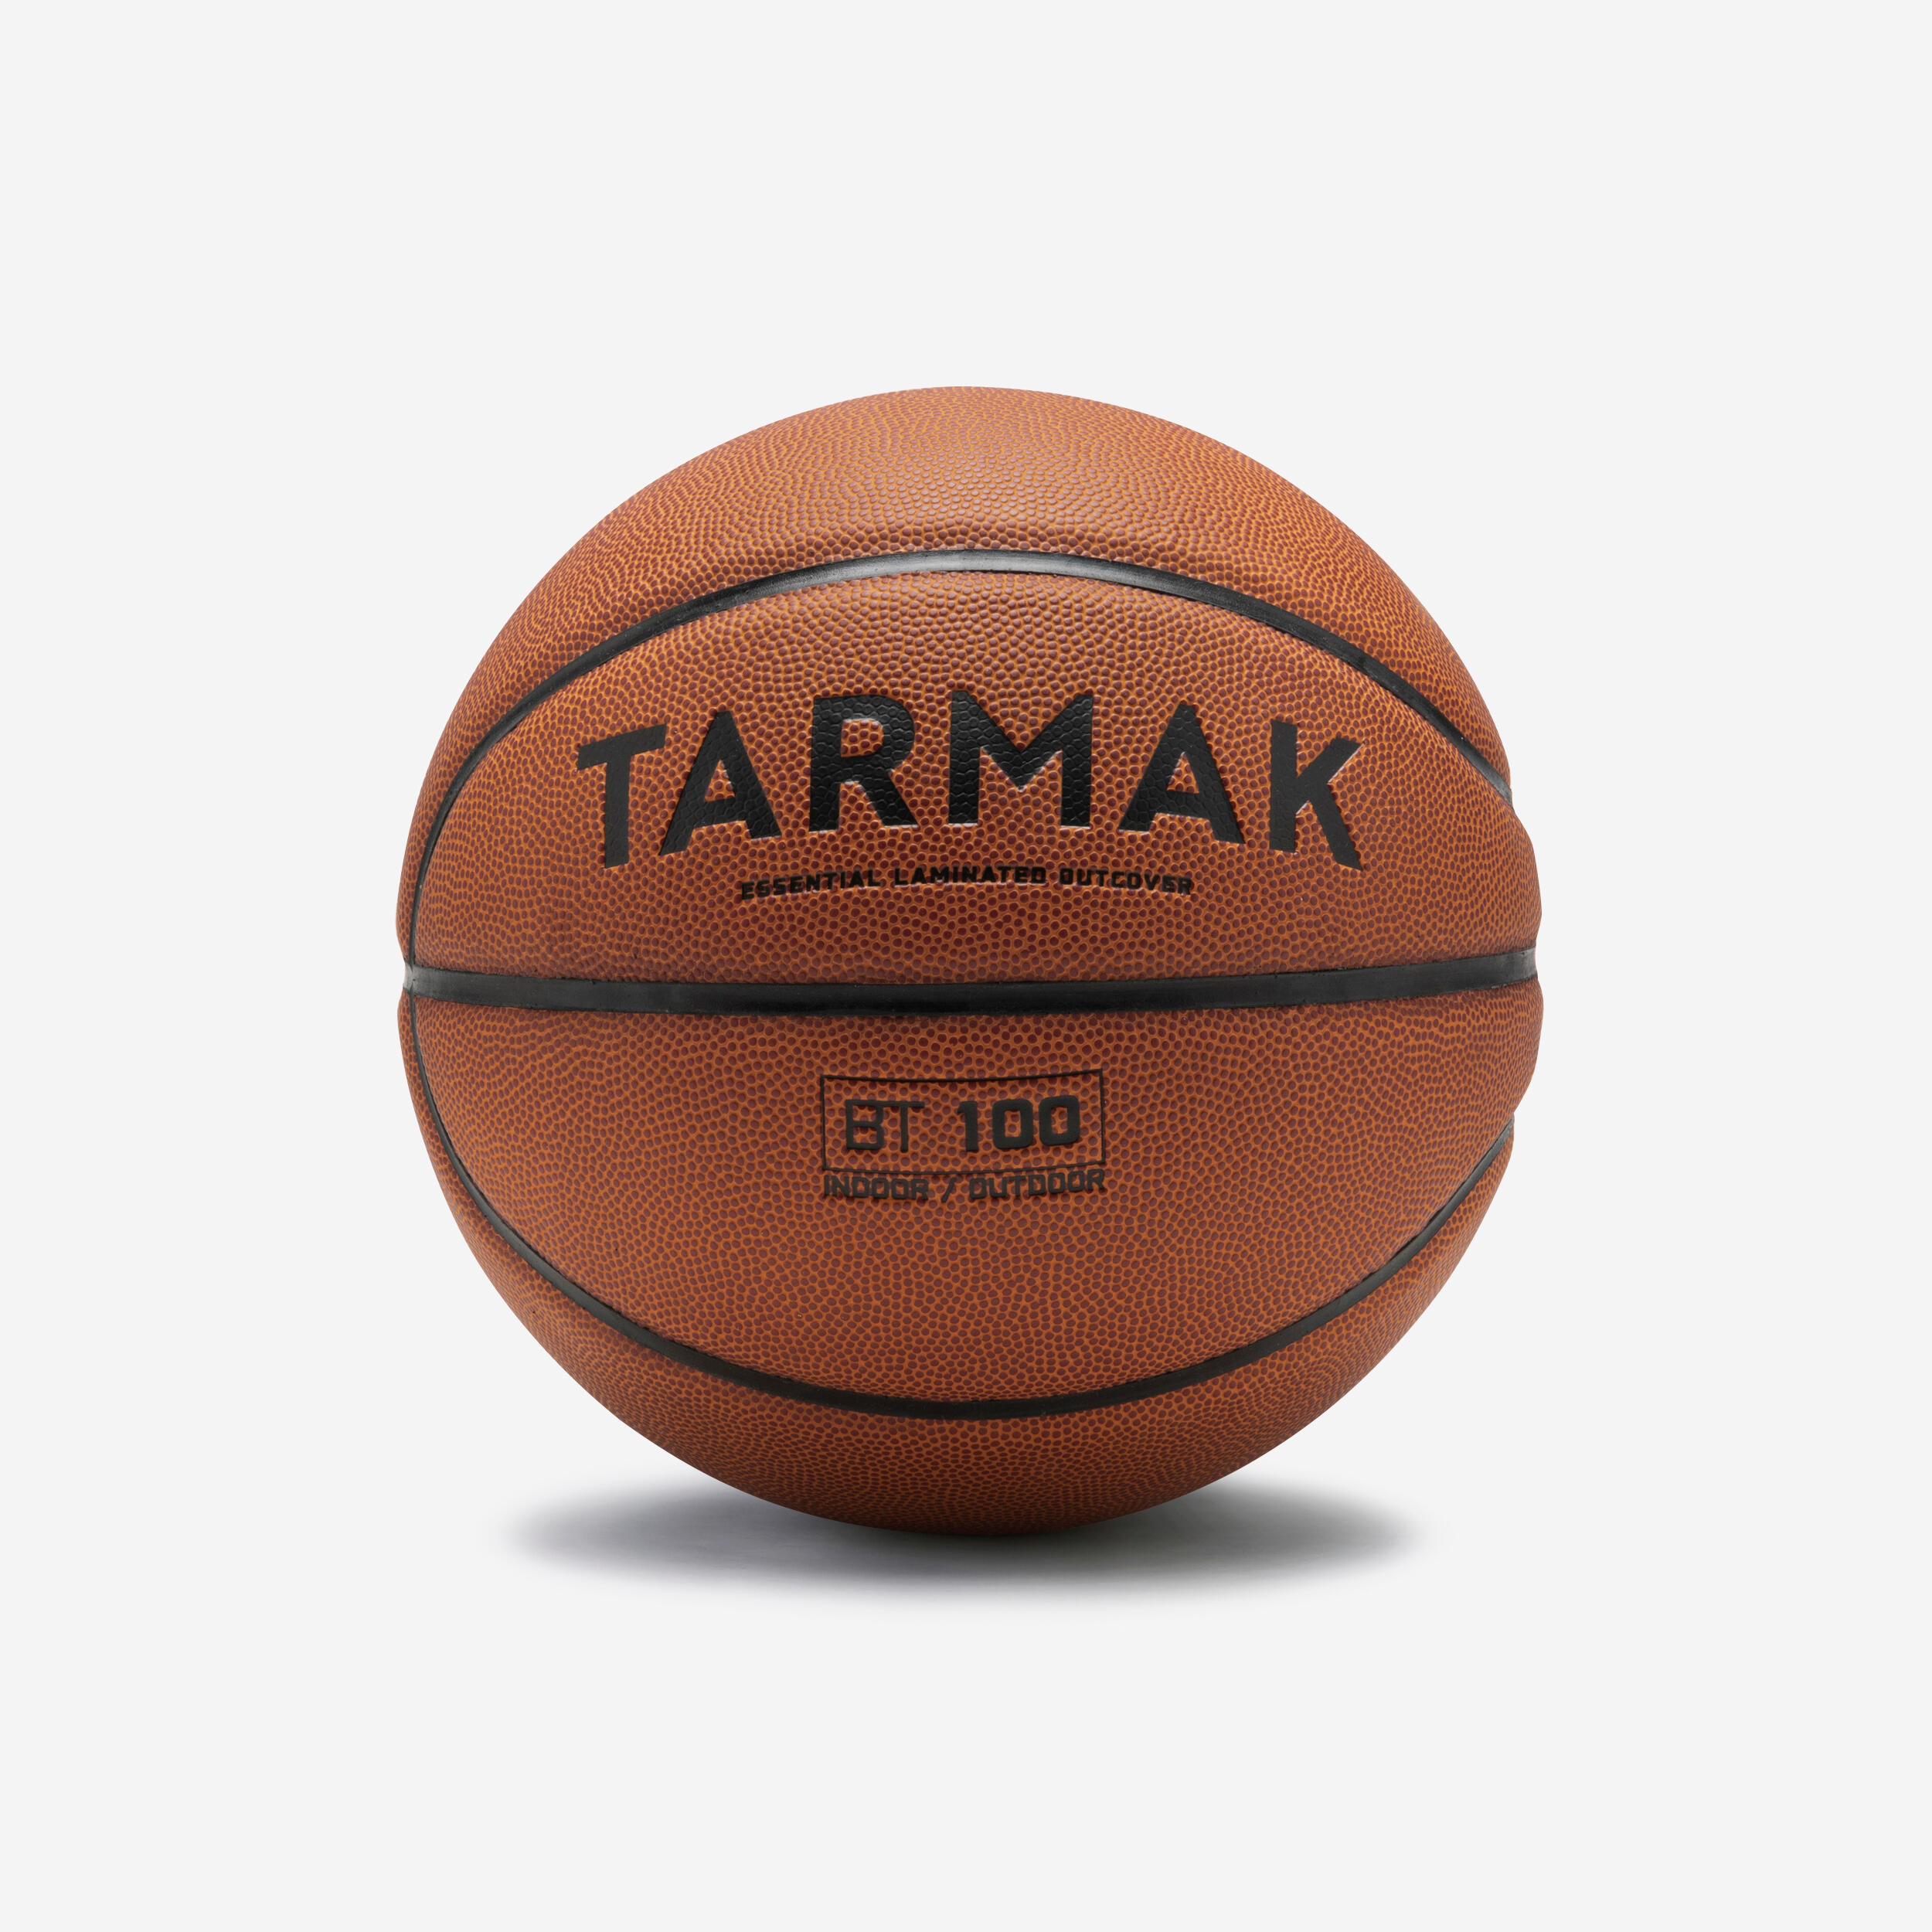 TARMAK Ballon De Basketball Taille 6 - Bt100 Touch Marron